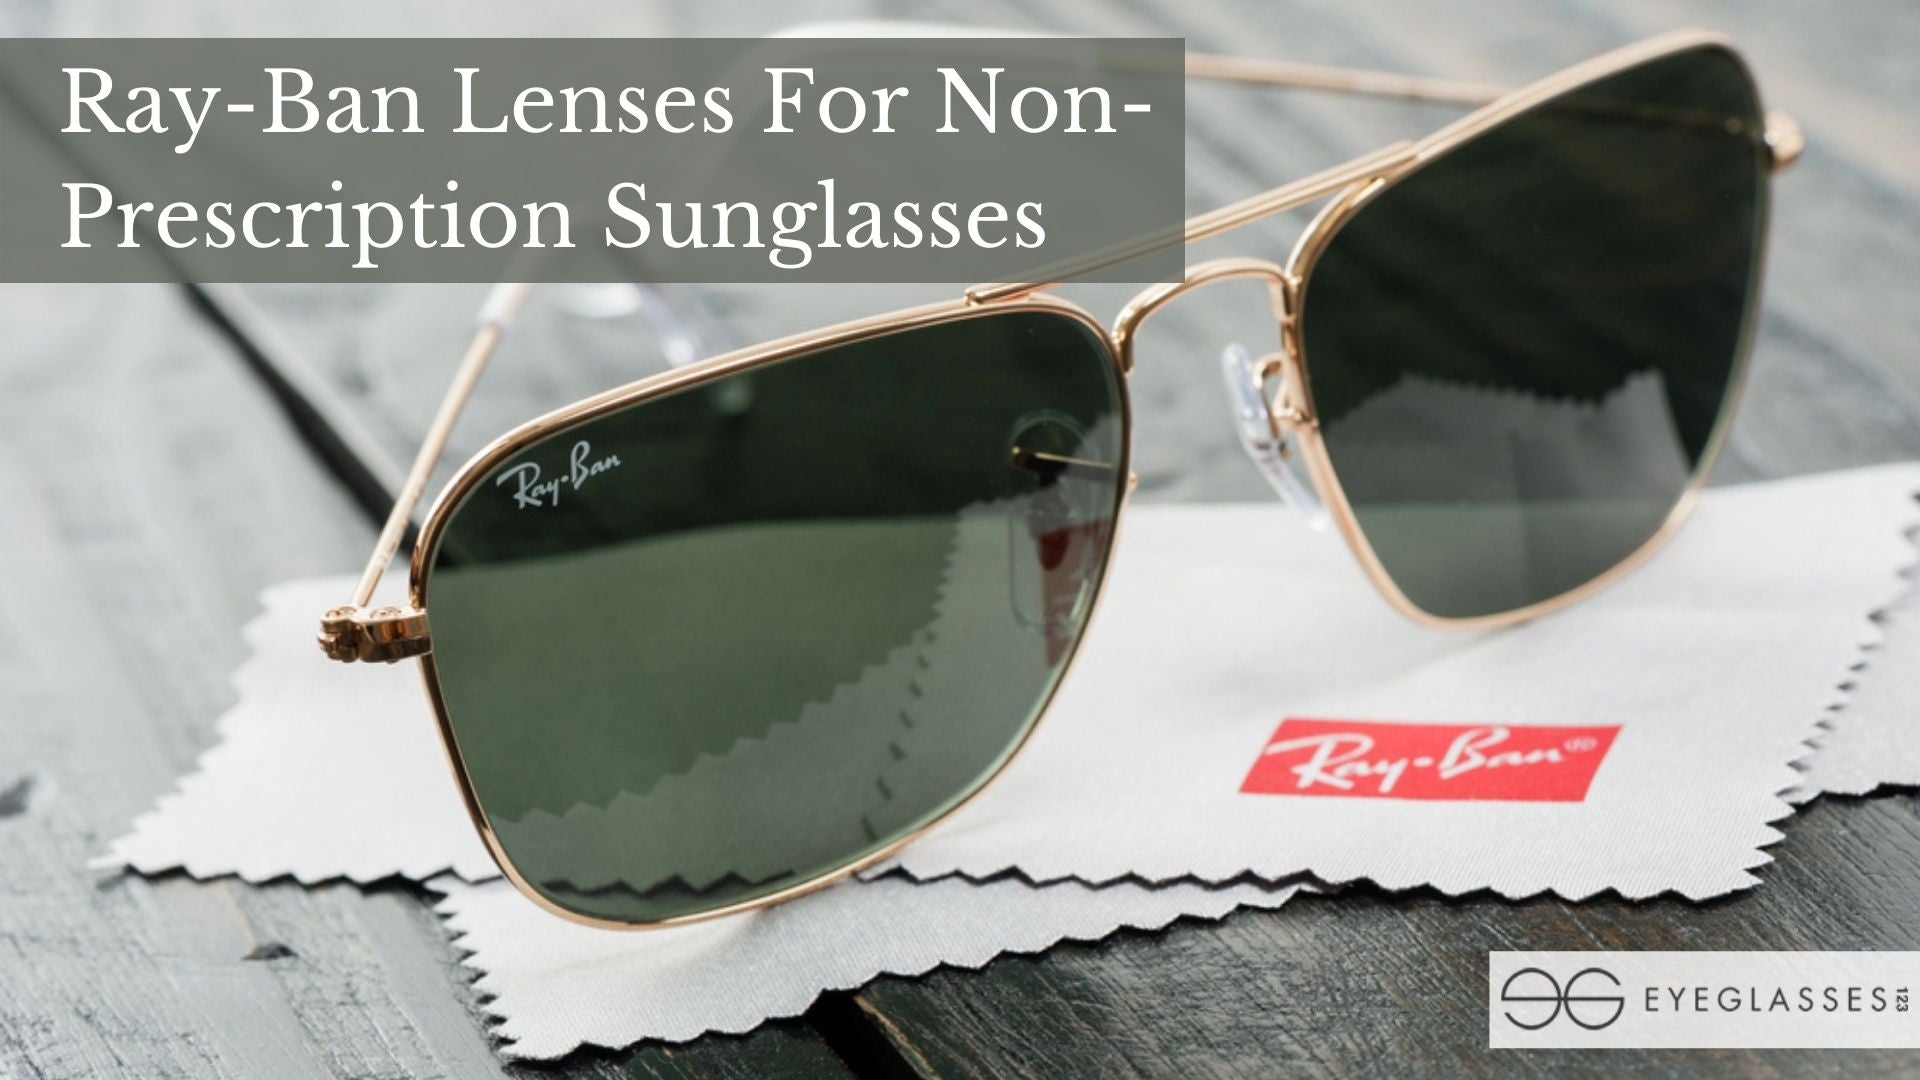 Ray-Ban Lenses For Non-Prescription Sunglasses